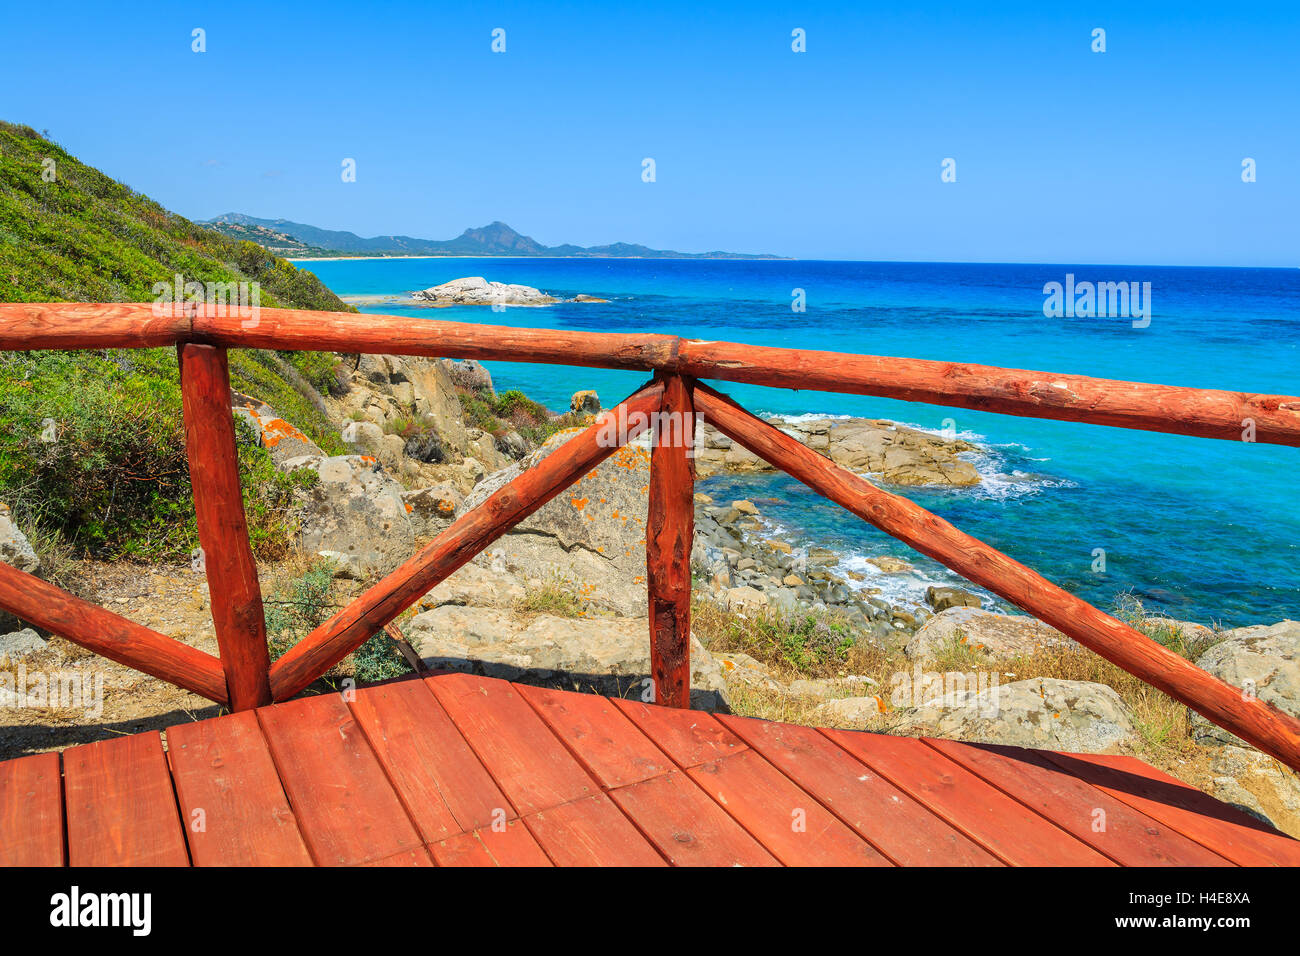 La plate-forme de vue en bois rouge à Cala Sinzias bay et sur la mer turquoise, l'île de Sardaigne, Italie Banque D'Images